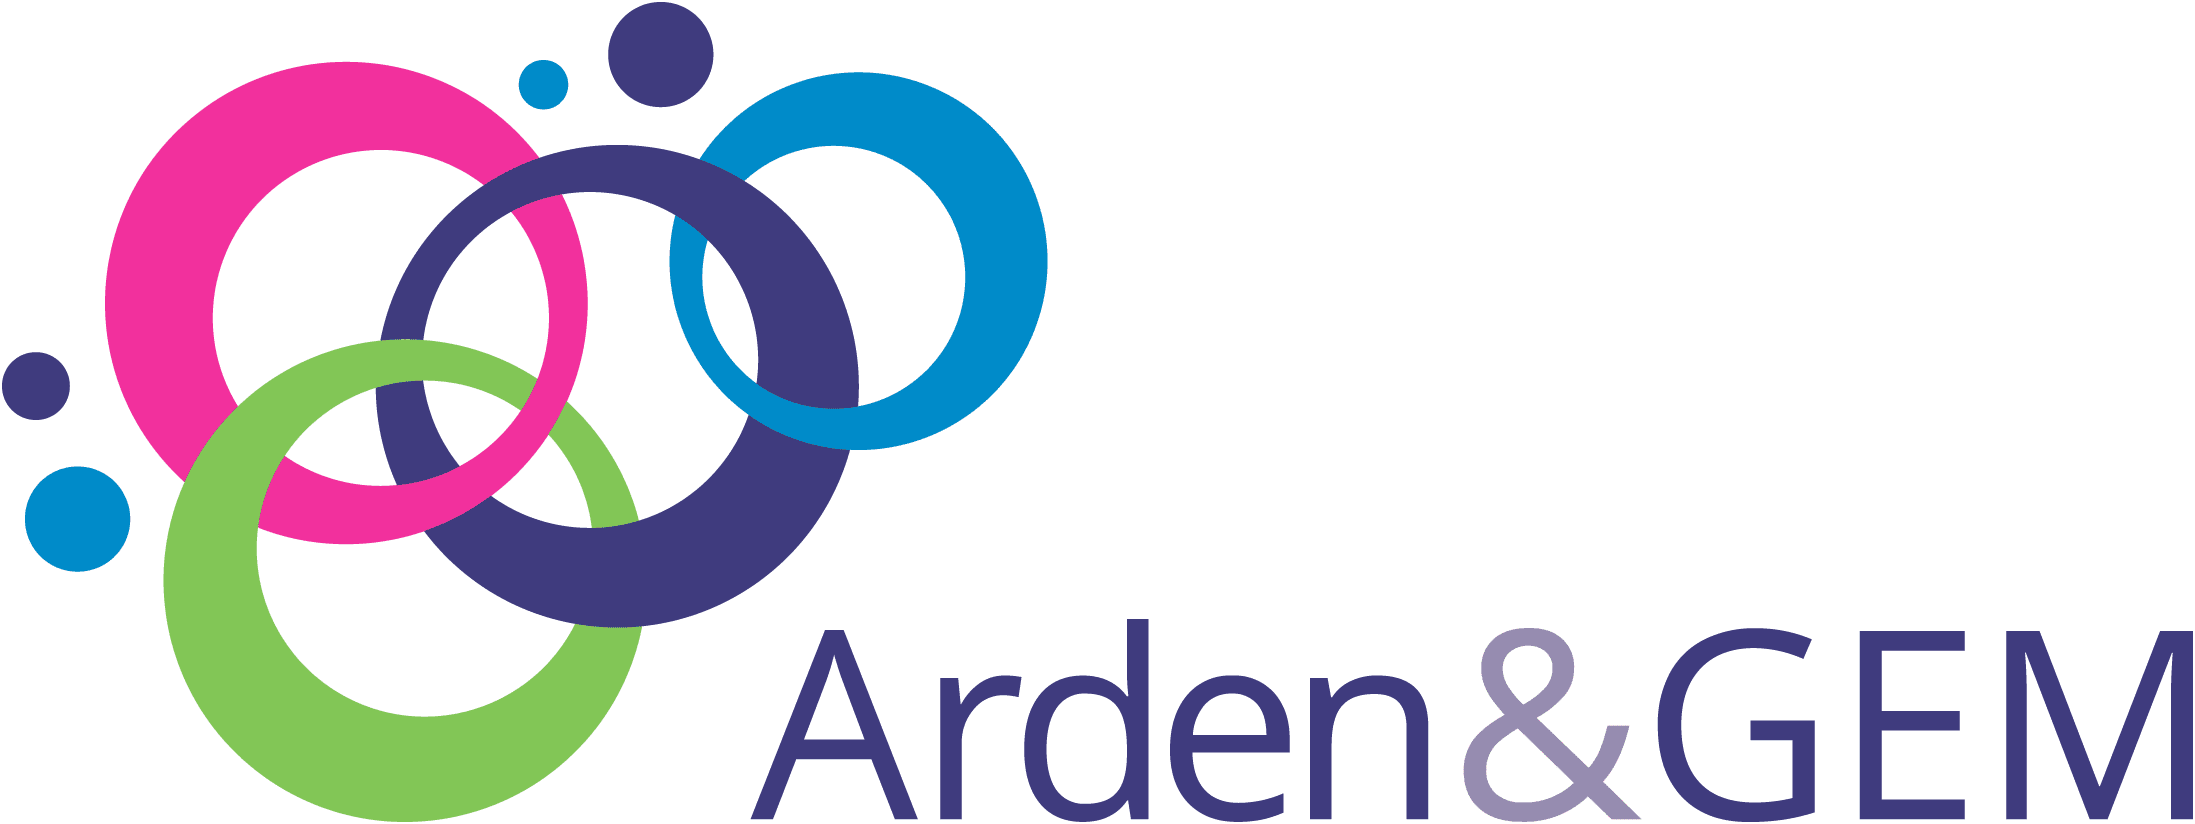 NHS Arden & GEM Commissioning Support Unit logo